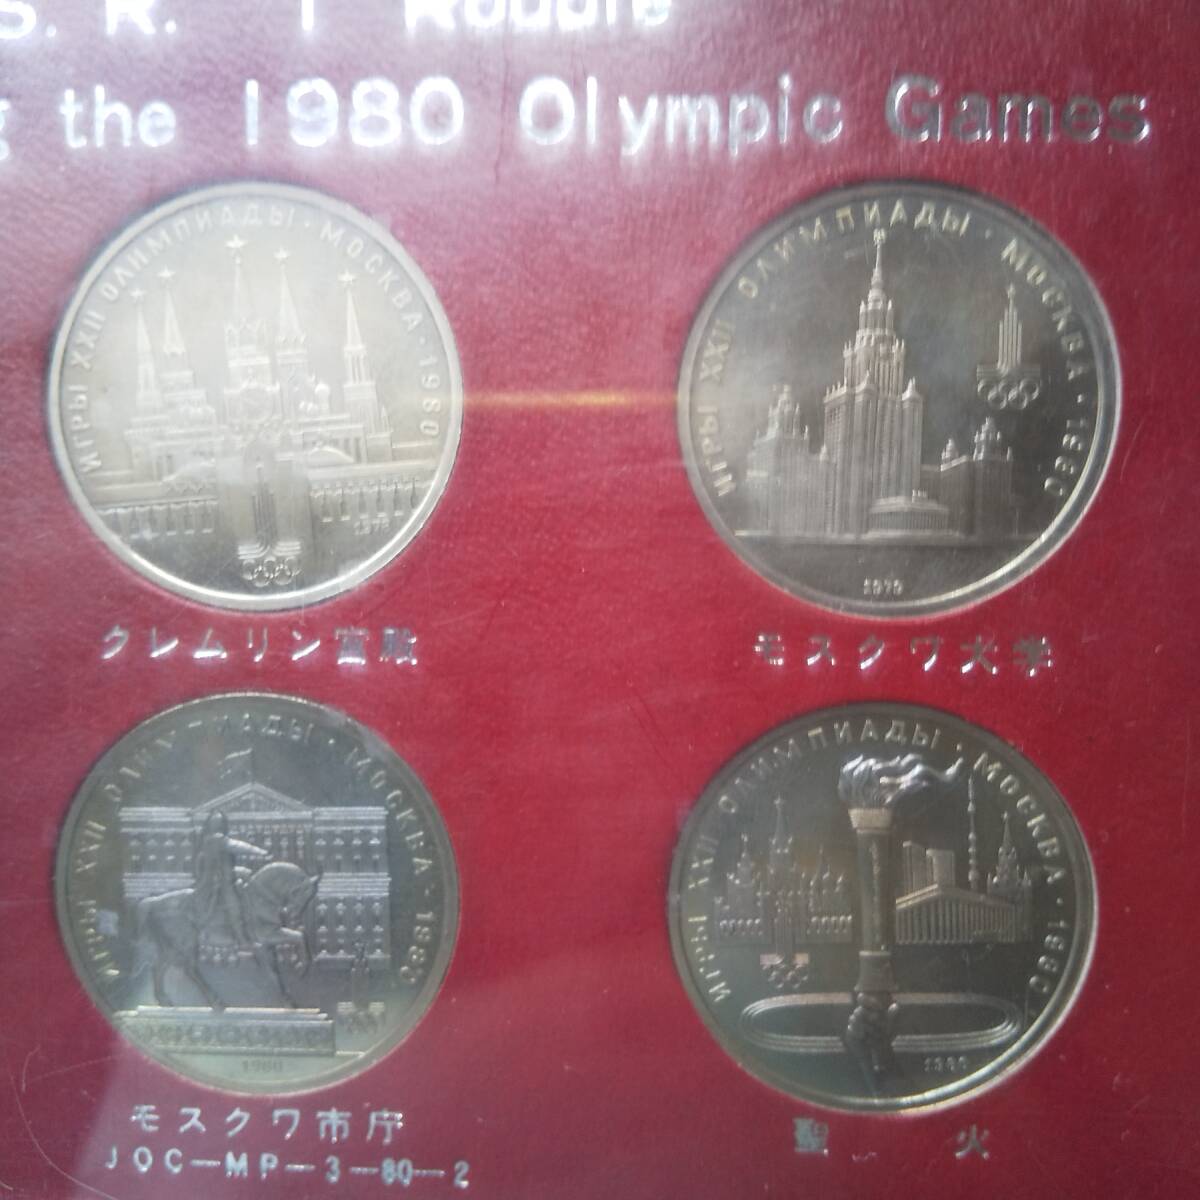 モスクワオリンピック1980記念メダル 1ルーブル硬貨6枚セットの画像3